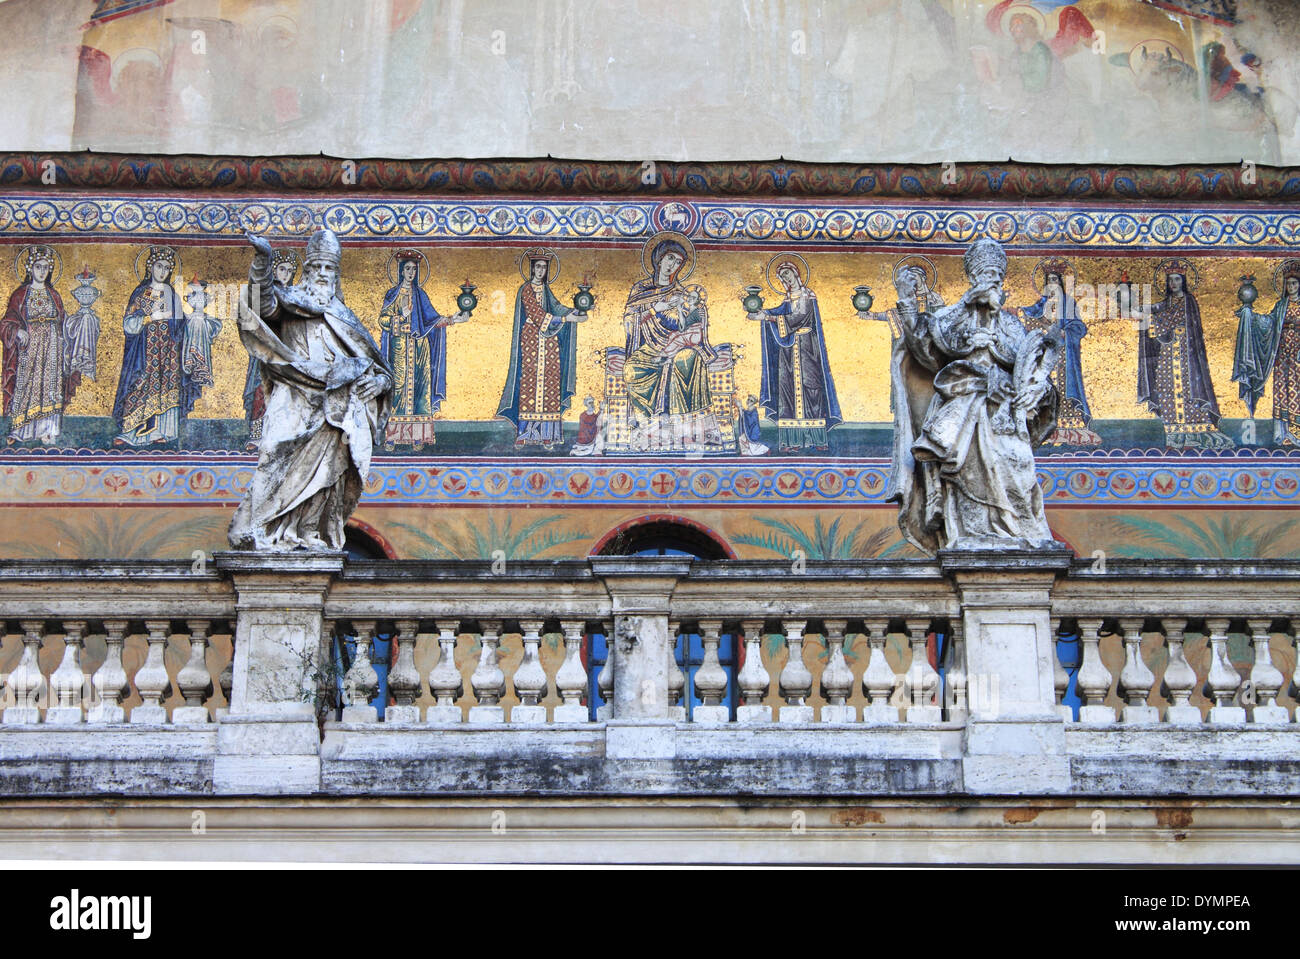 Façade de l'église Sainte Marie du Trastevere. Rome, Italie Banque D'Images